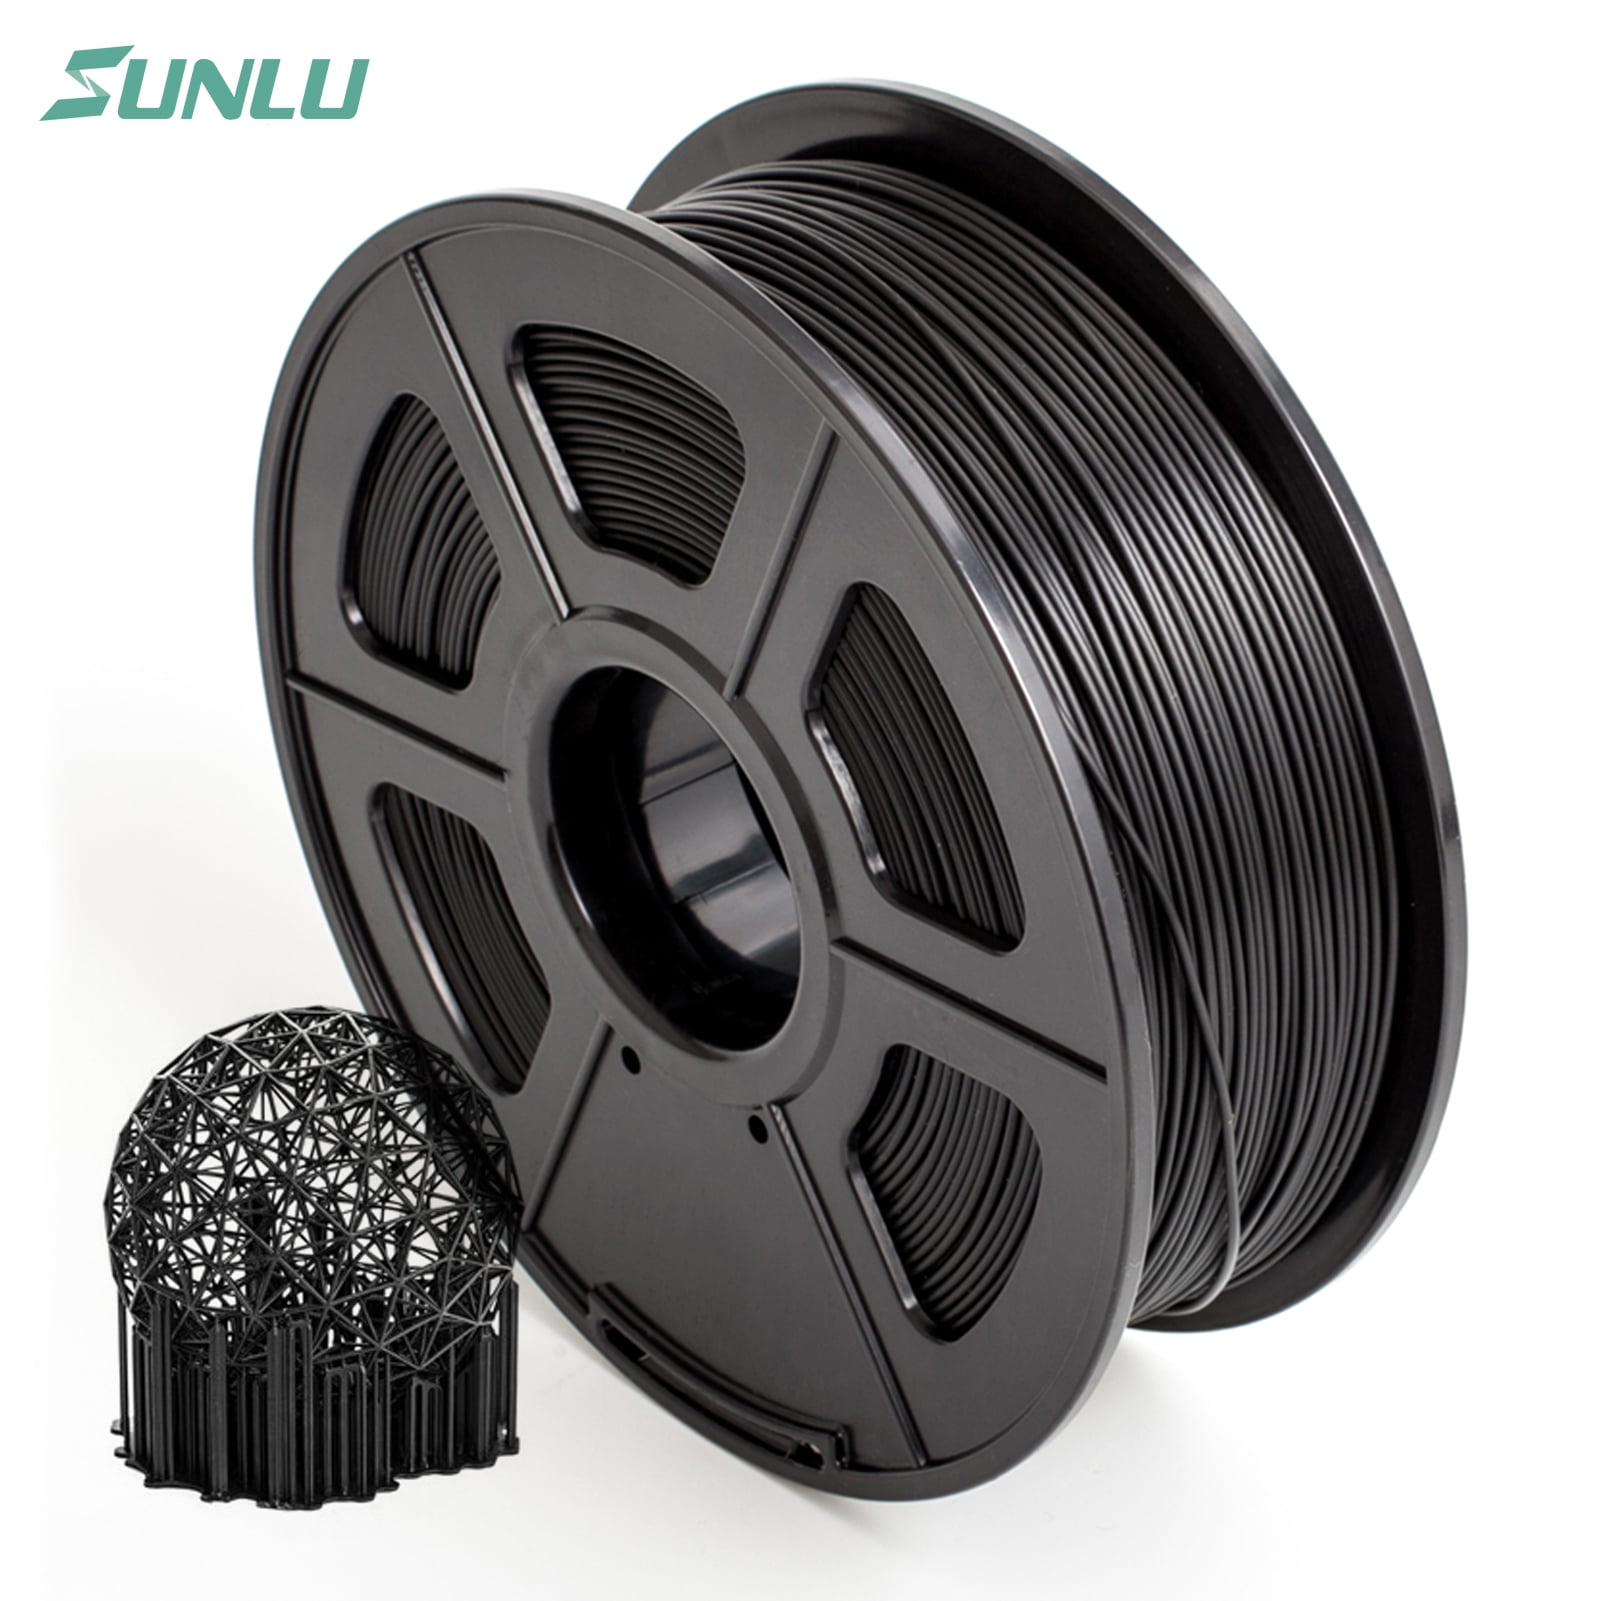 SUNLU 3D Printer Filament PLA PLUS  FUCHSIA 1.75mm 1KG/2.2LB Consumables 